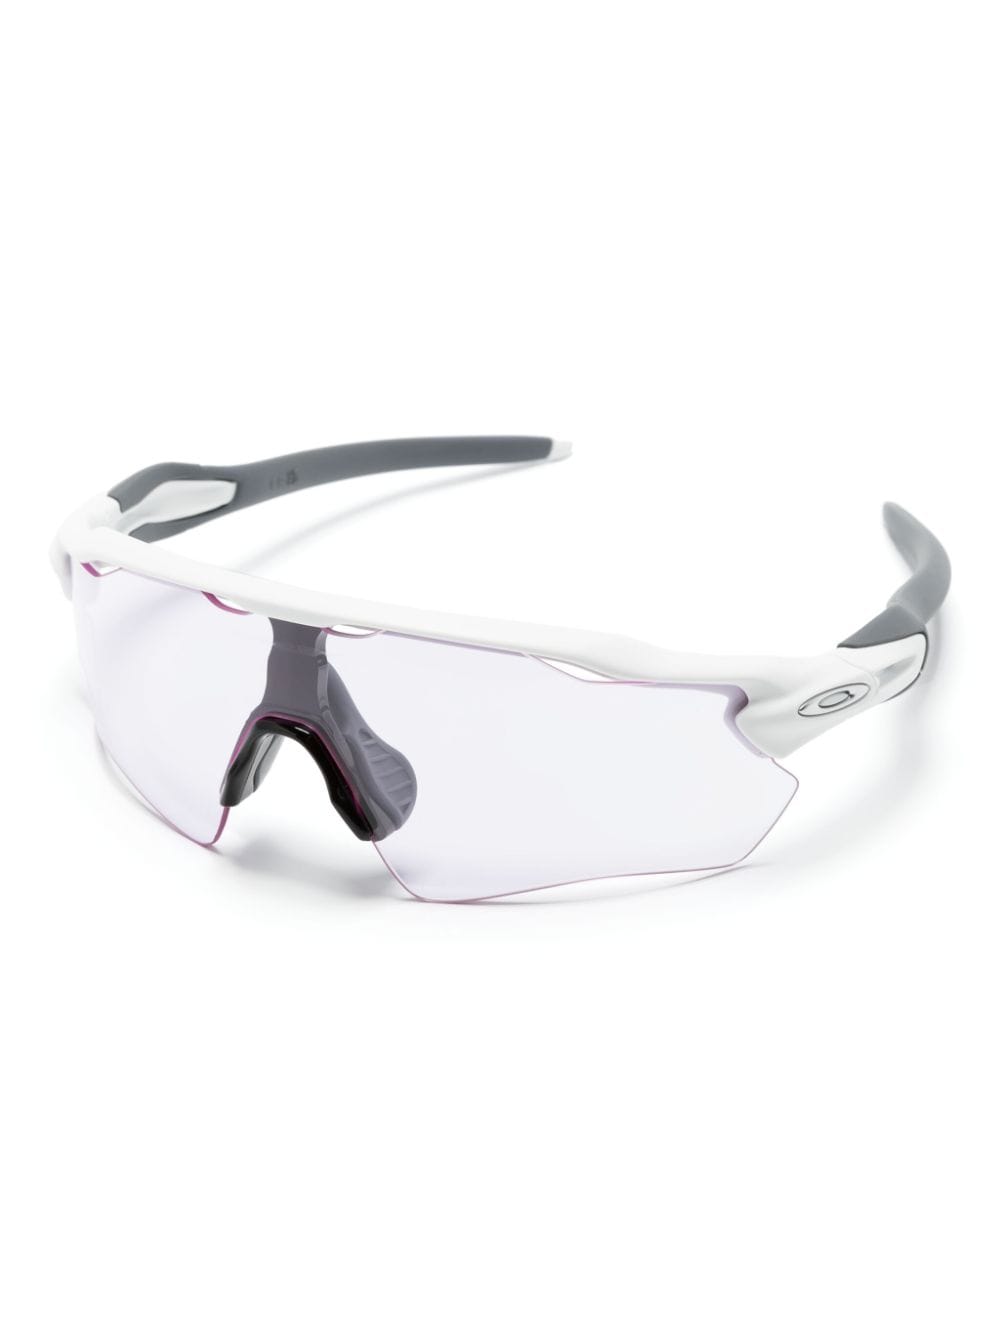 Oakley Radar zonnebril met schild montuur - Roze